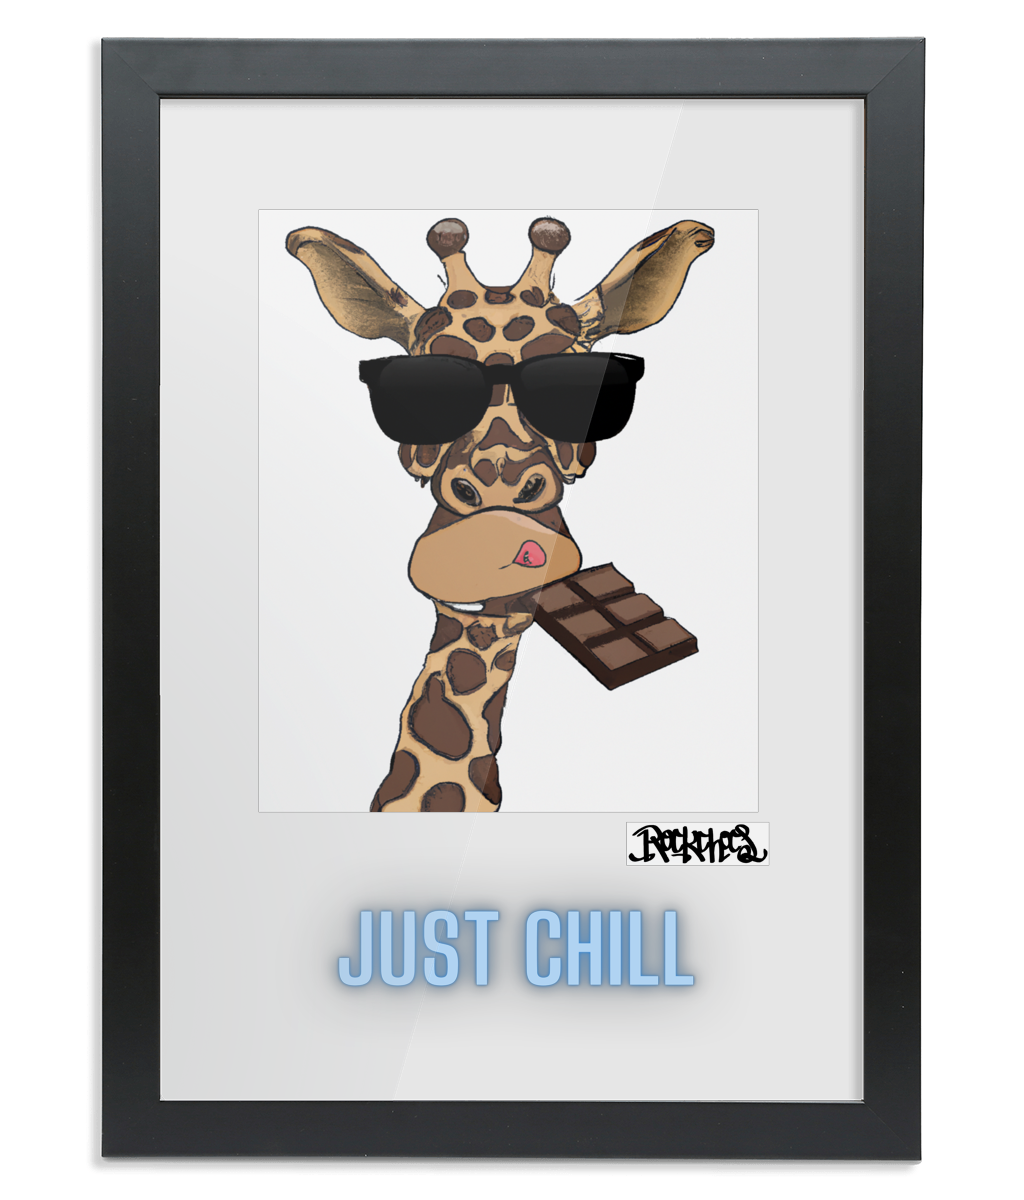 Framed A2 Fine Art Print - Just Chill Giraffe Art by Rock Chocs